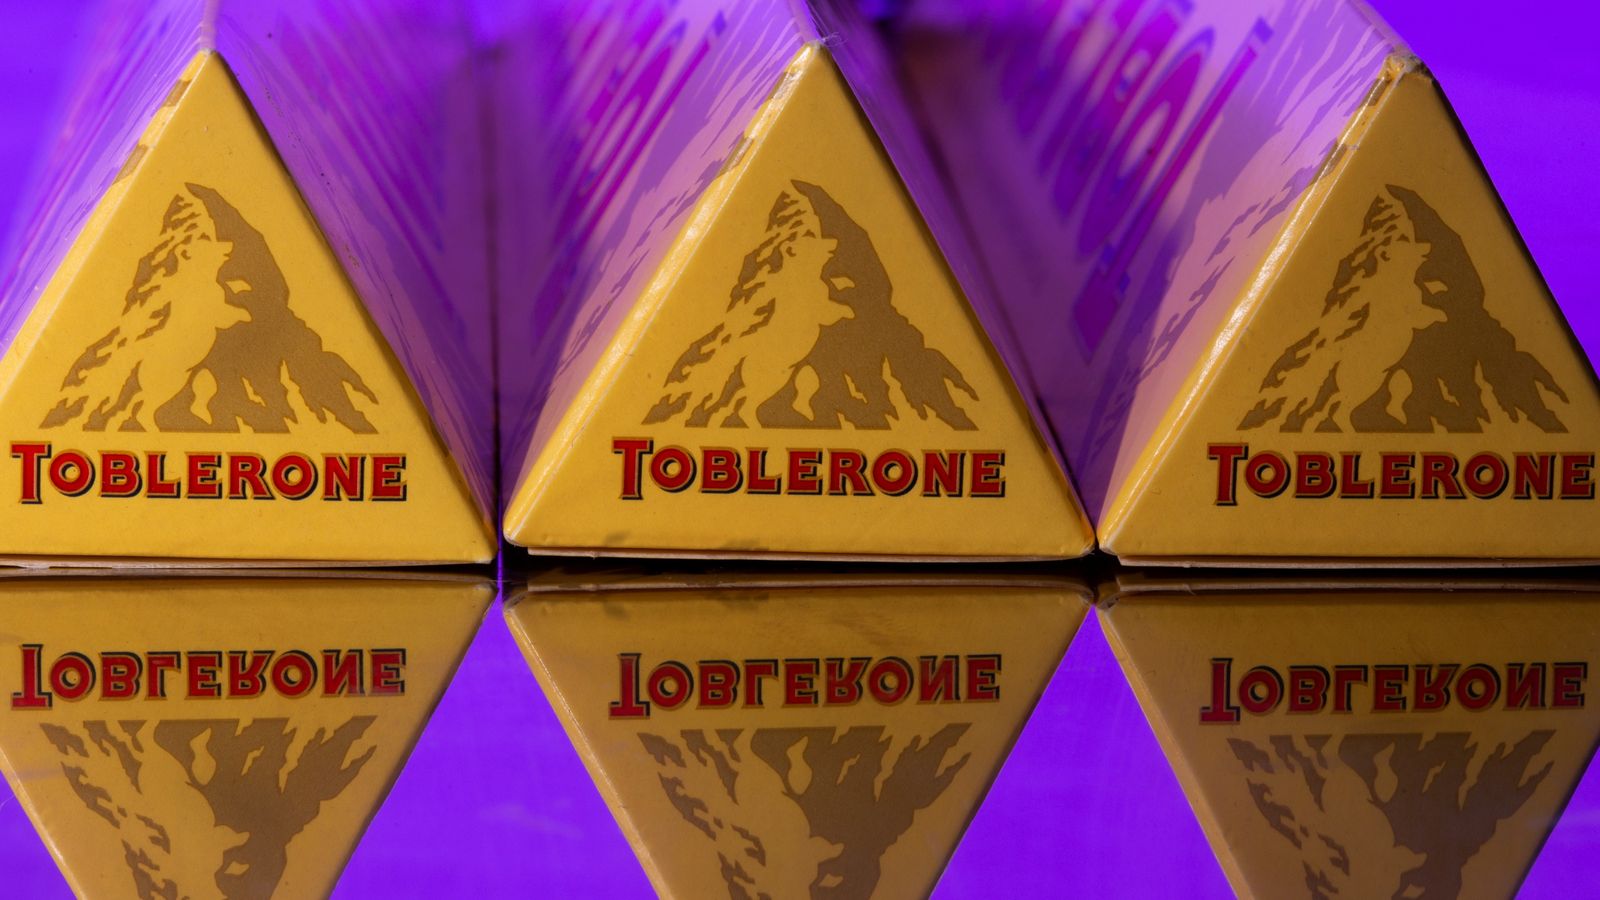 Toblerone убирает логотип Matterhorn с упаковки, потому что он больше не производится в Швейцарии |  Деловые новости